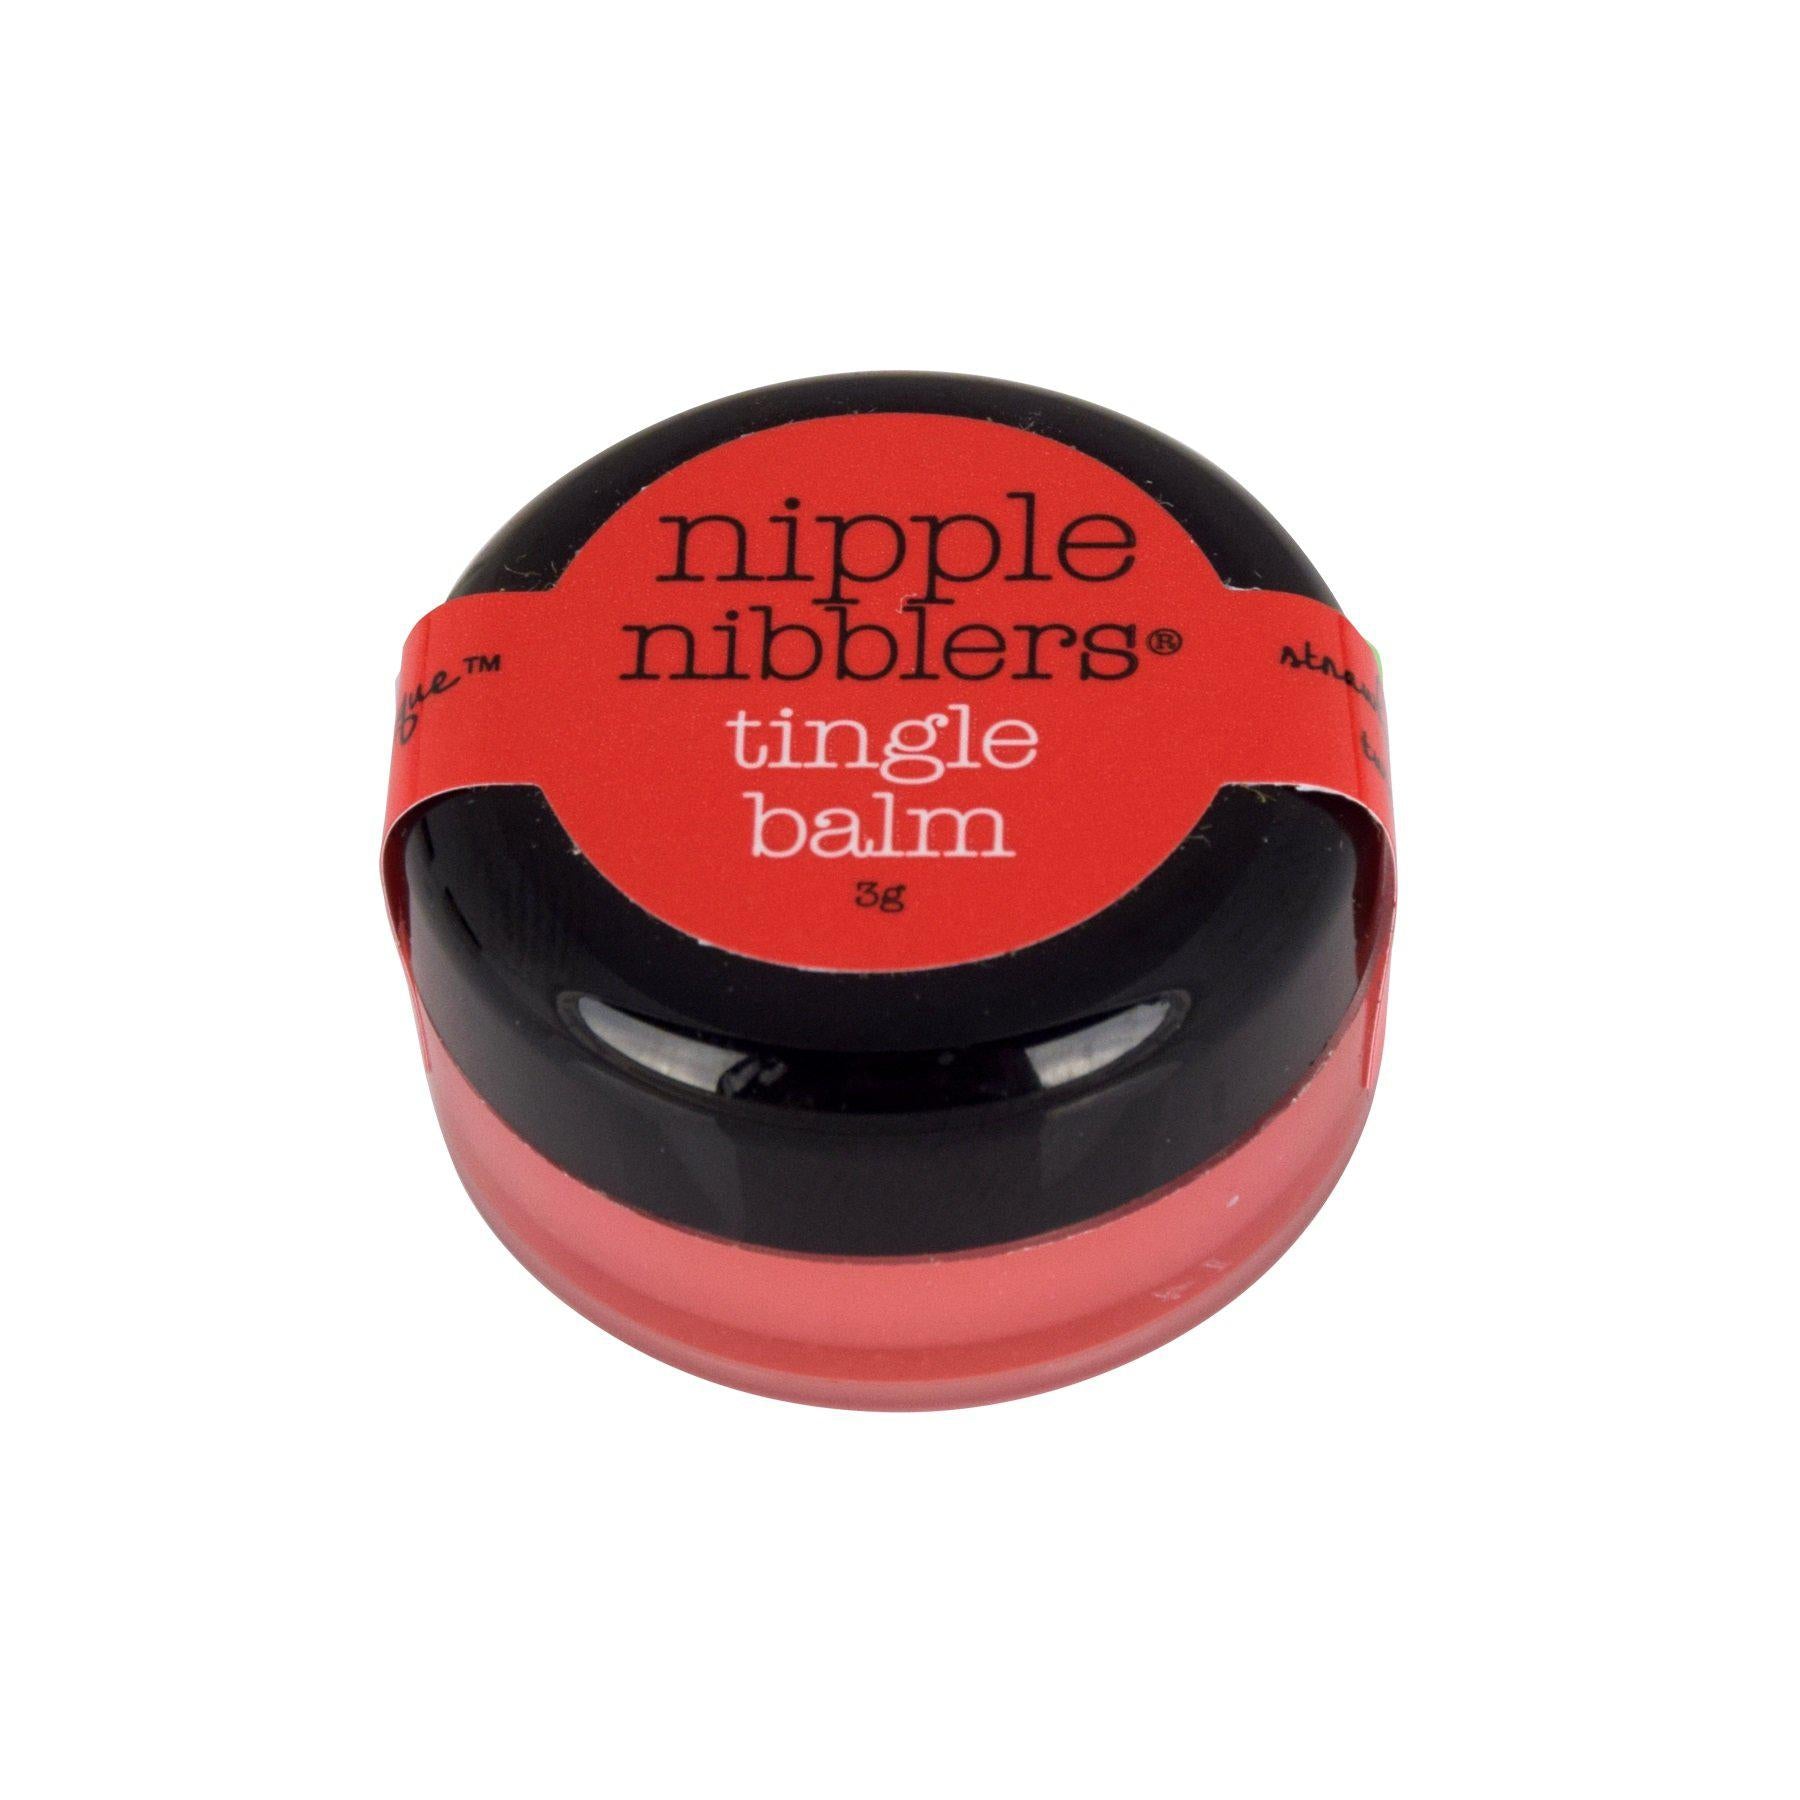 Nipple Nibblers Tingle Balm - Strawberry Twist -  3gm Jar JEL2504-05